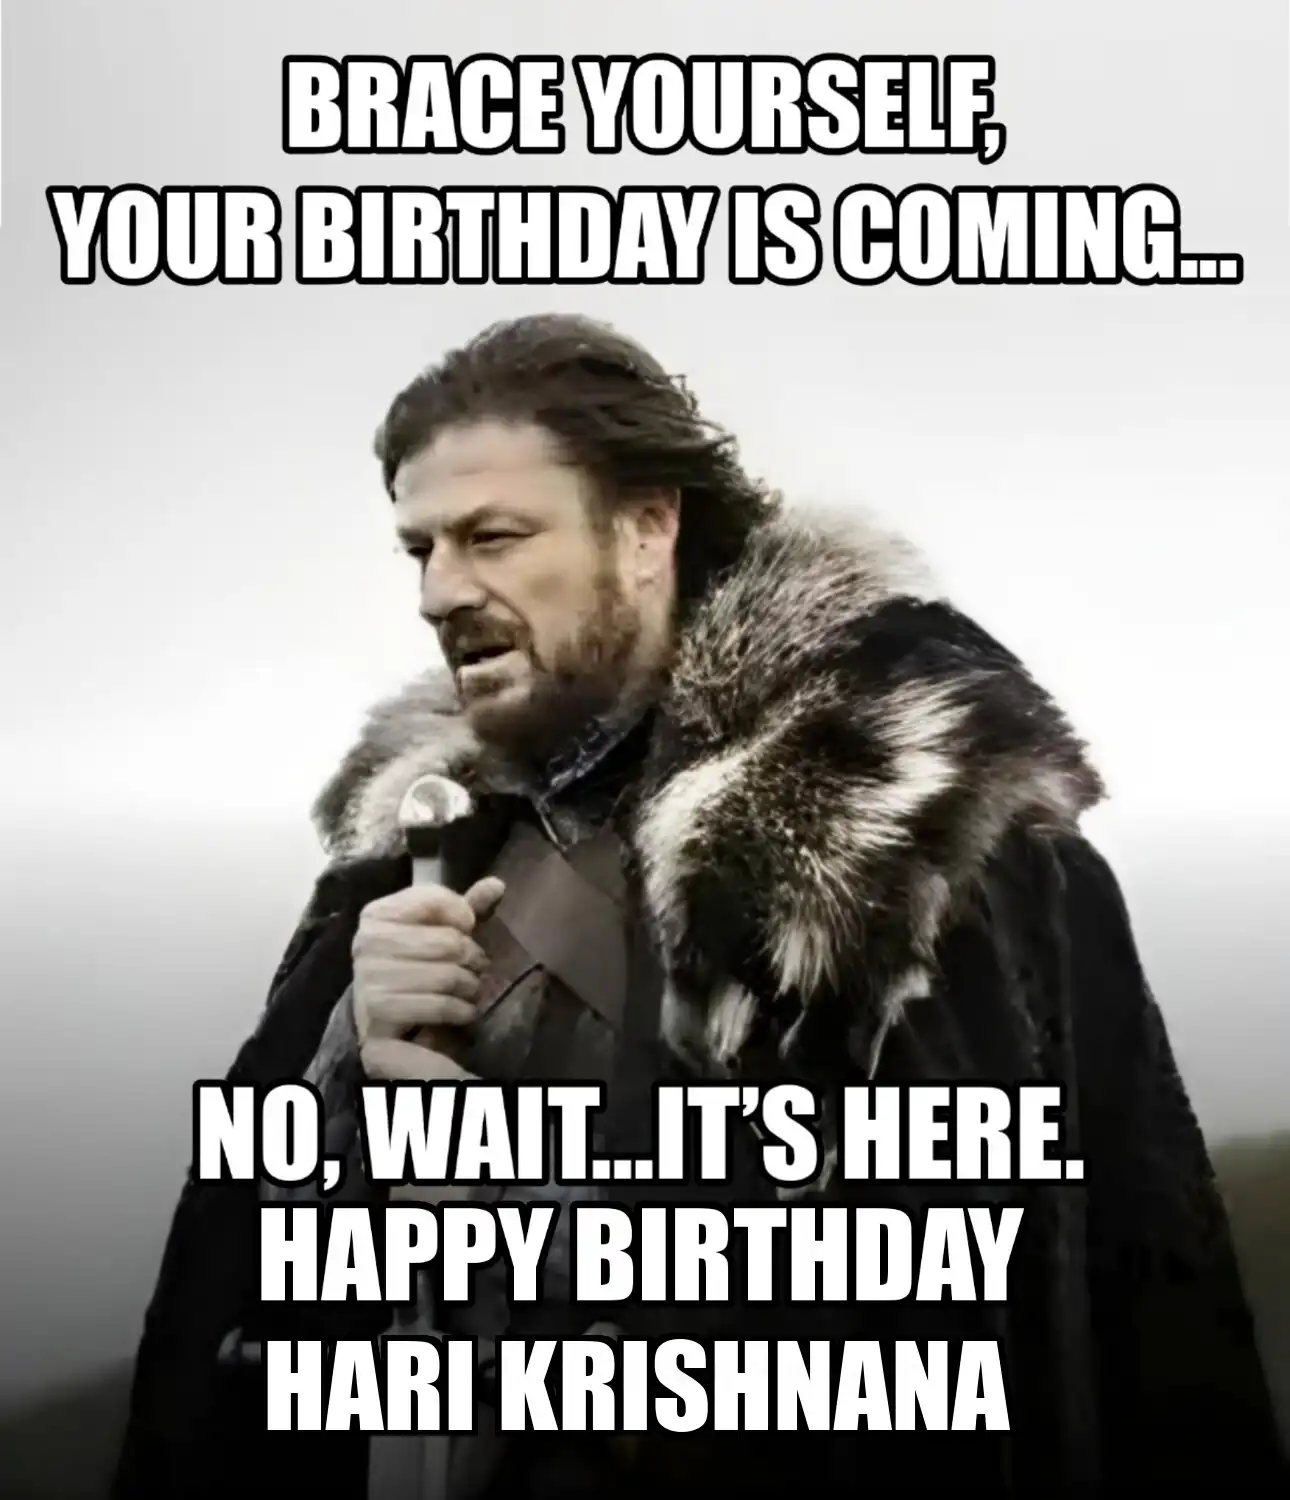 Happy Birthday Hari krishnana Brace Yourself Your Birthday Is Coming Meme